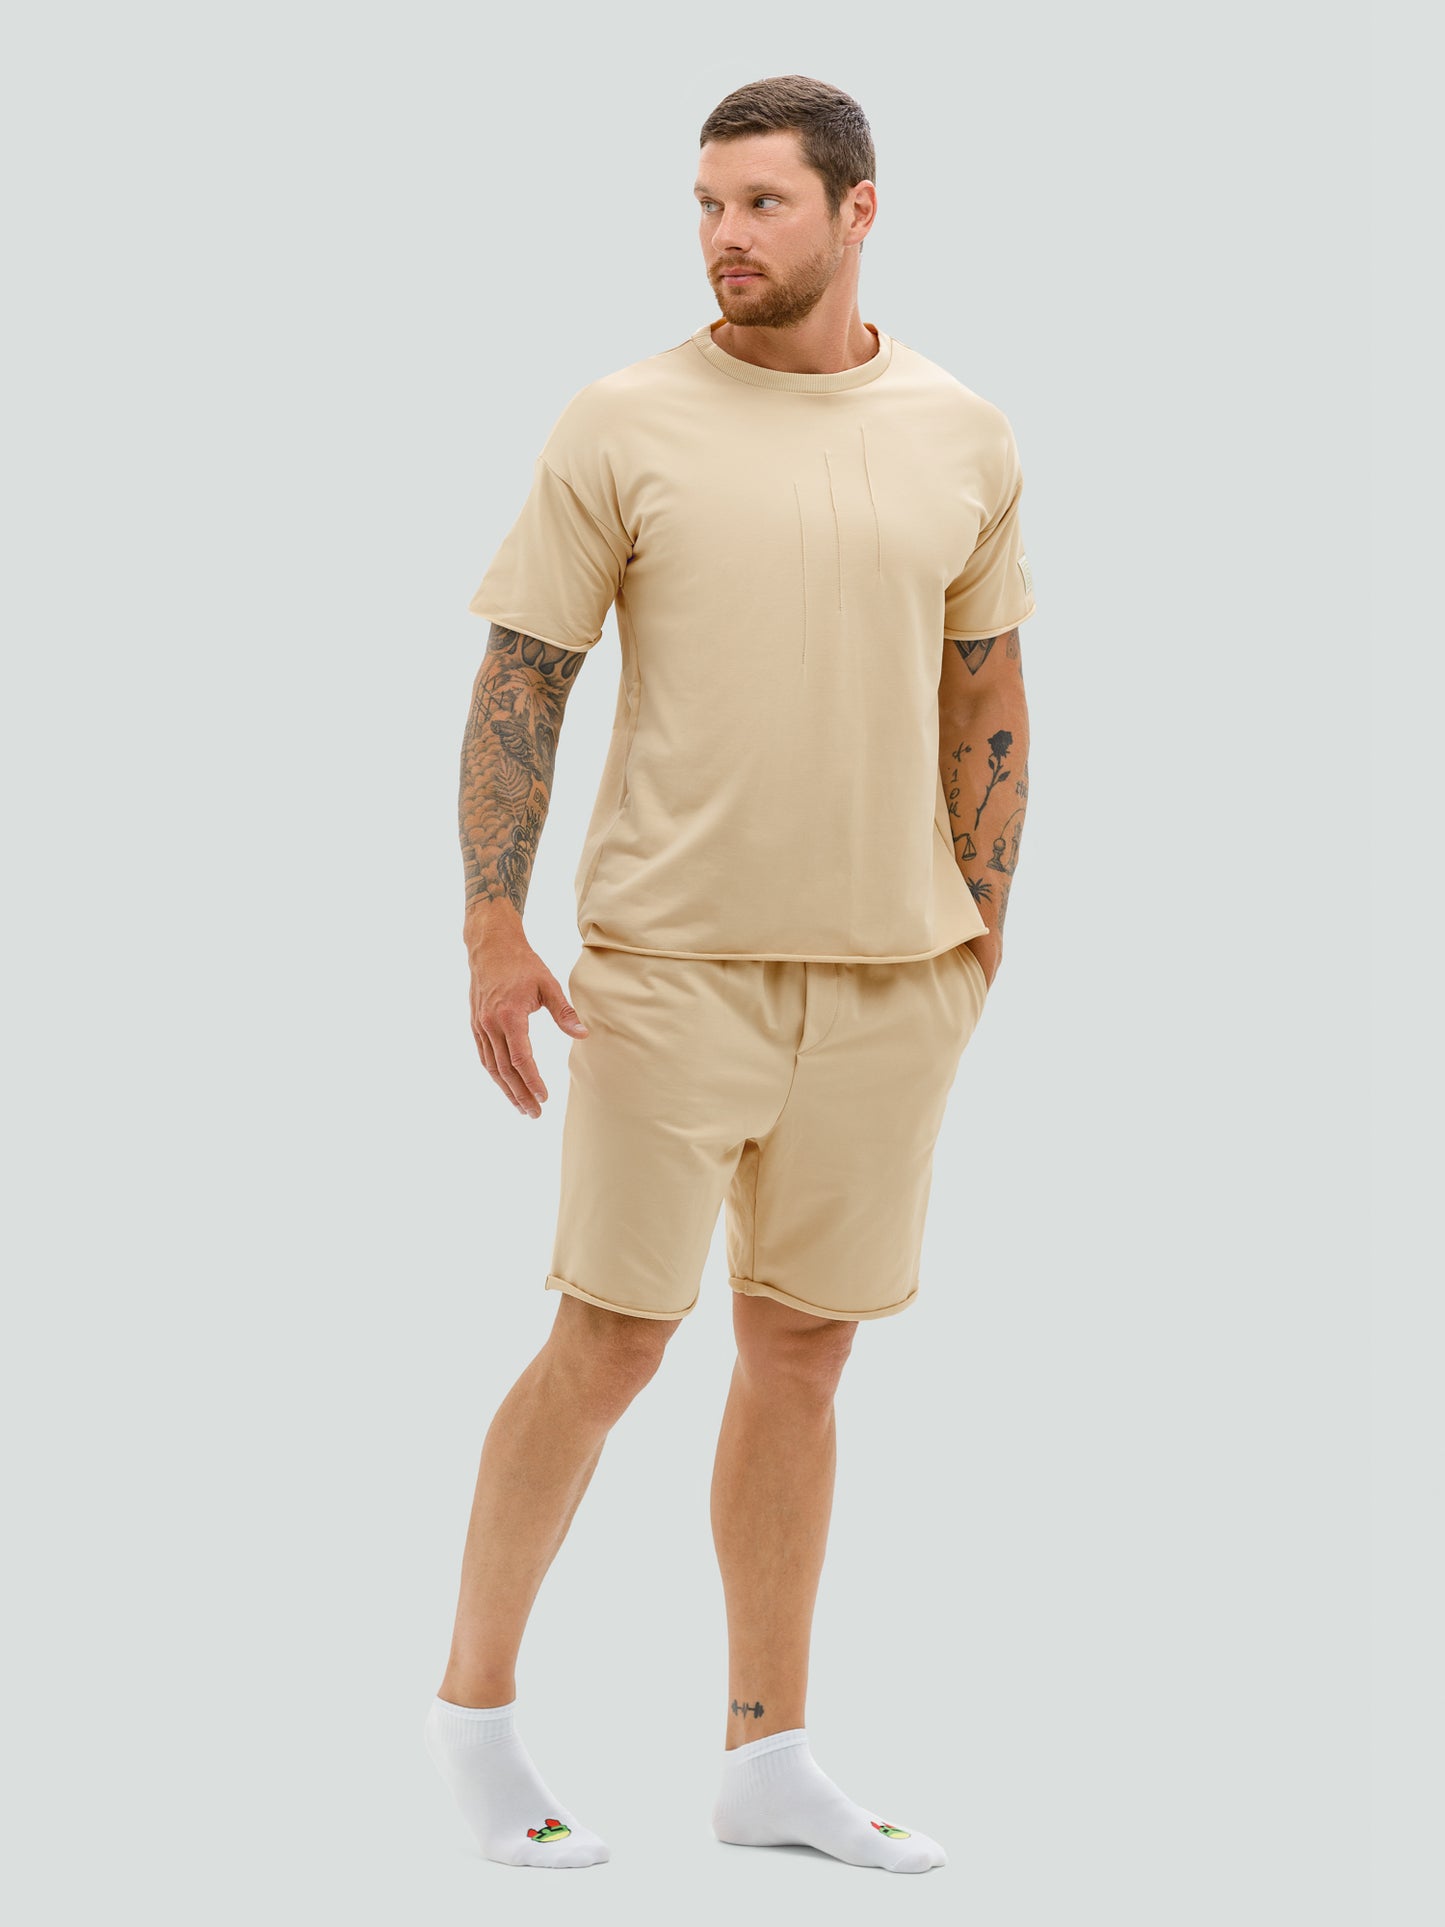 Kreminis šortų ir marškinėlių komplektas vyrams "Hot summer"